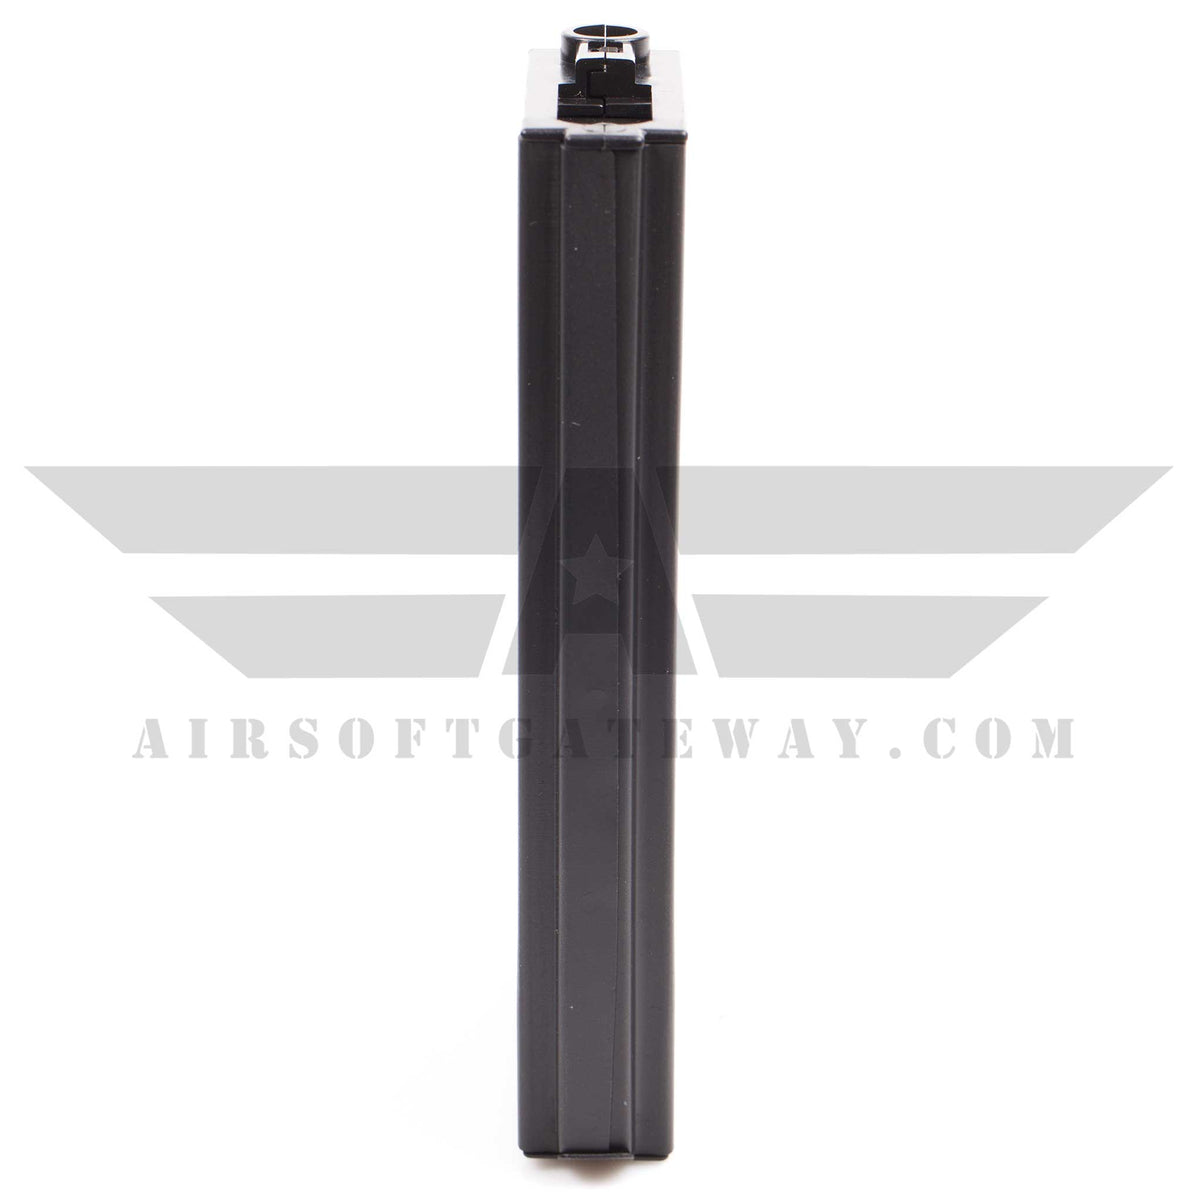 LANCER TACTICAL - Chargeur Hi-cap métal pour M4/M16 - 300 billes - TAN -  Heritage Airsoft